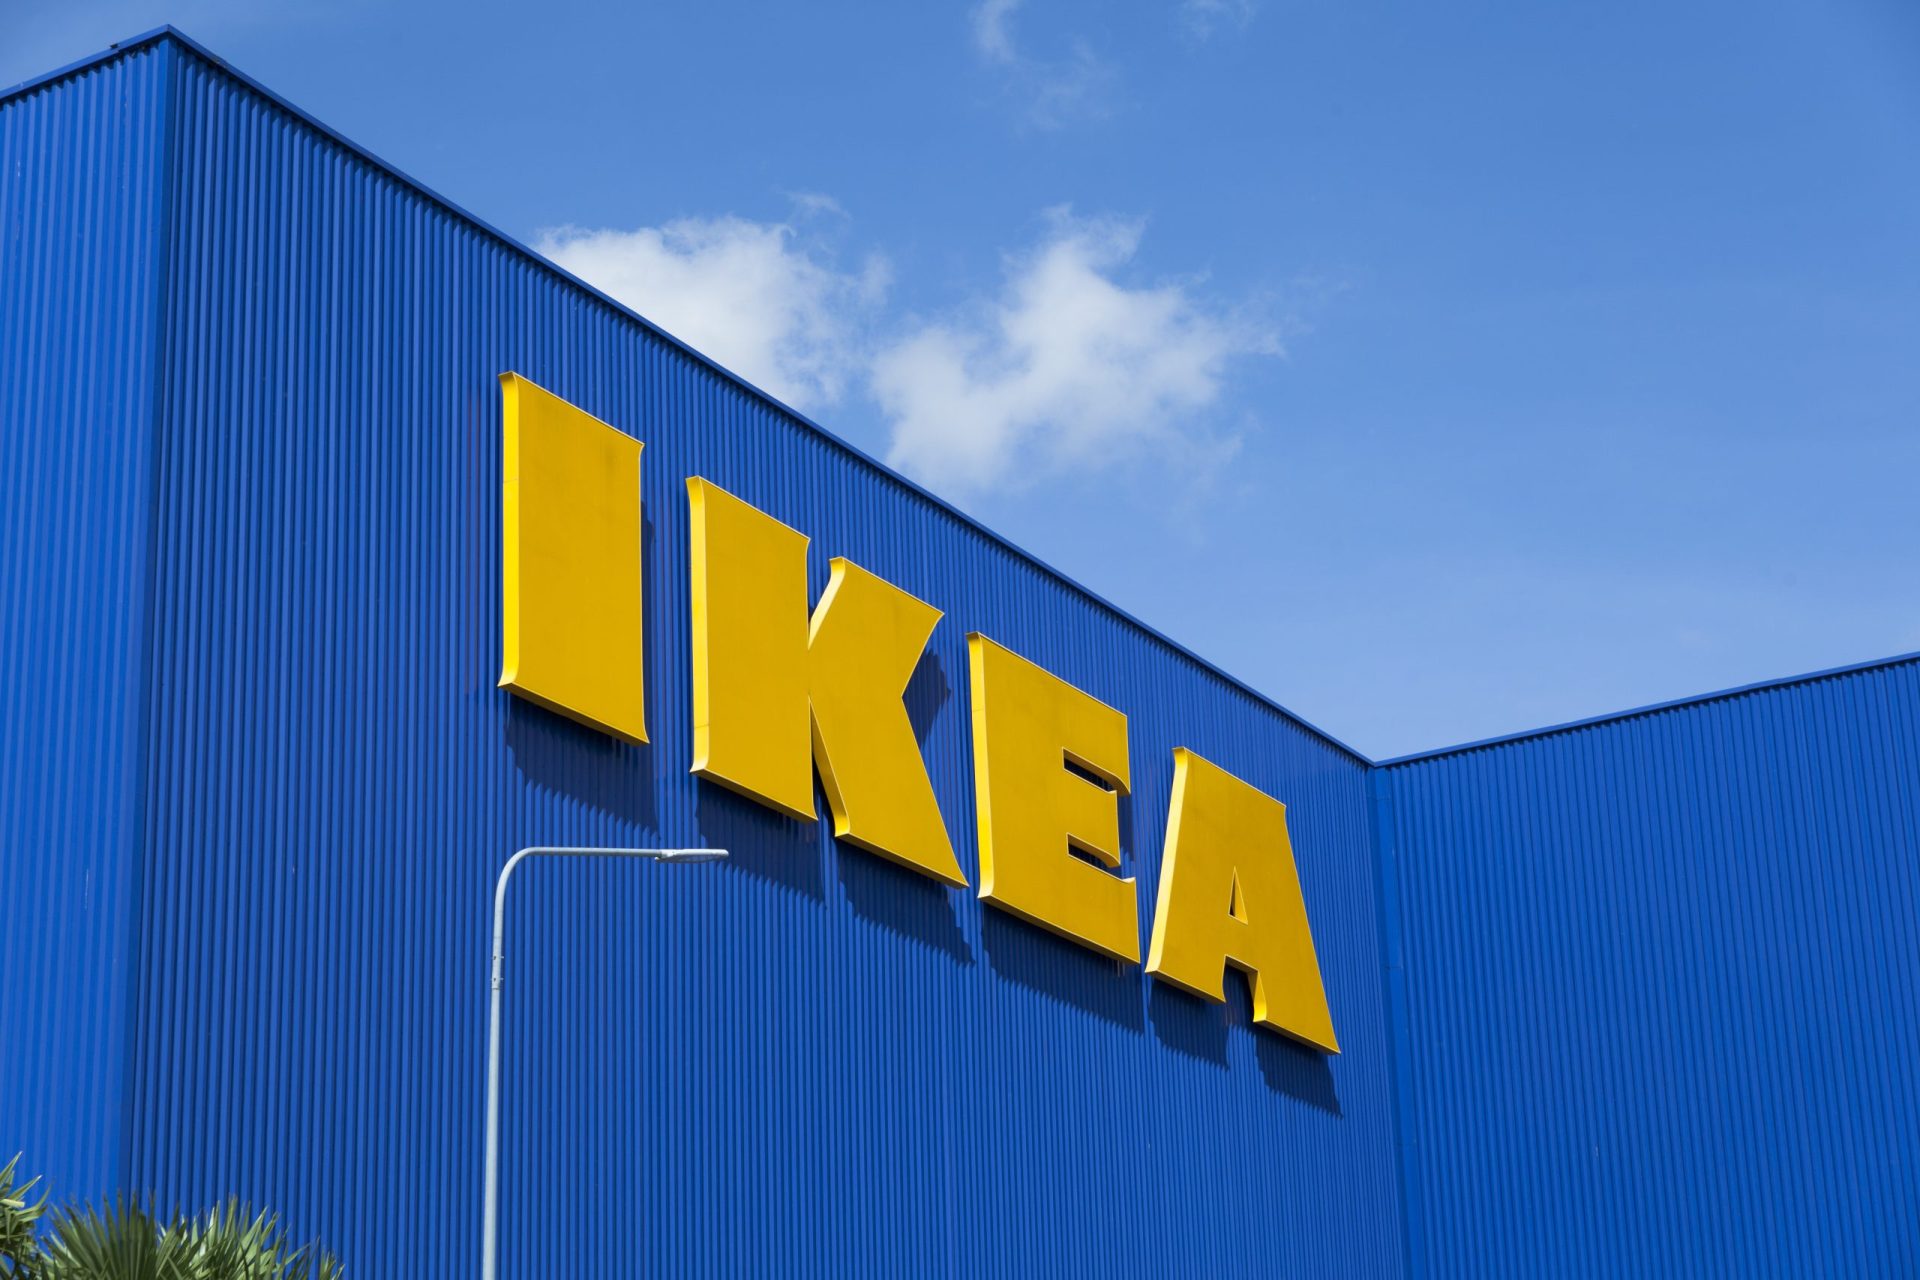 Morreu uma trabalhadora das obras do IKEA de Loulé